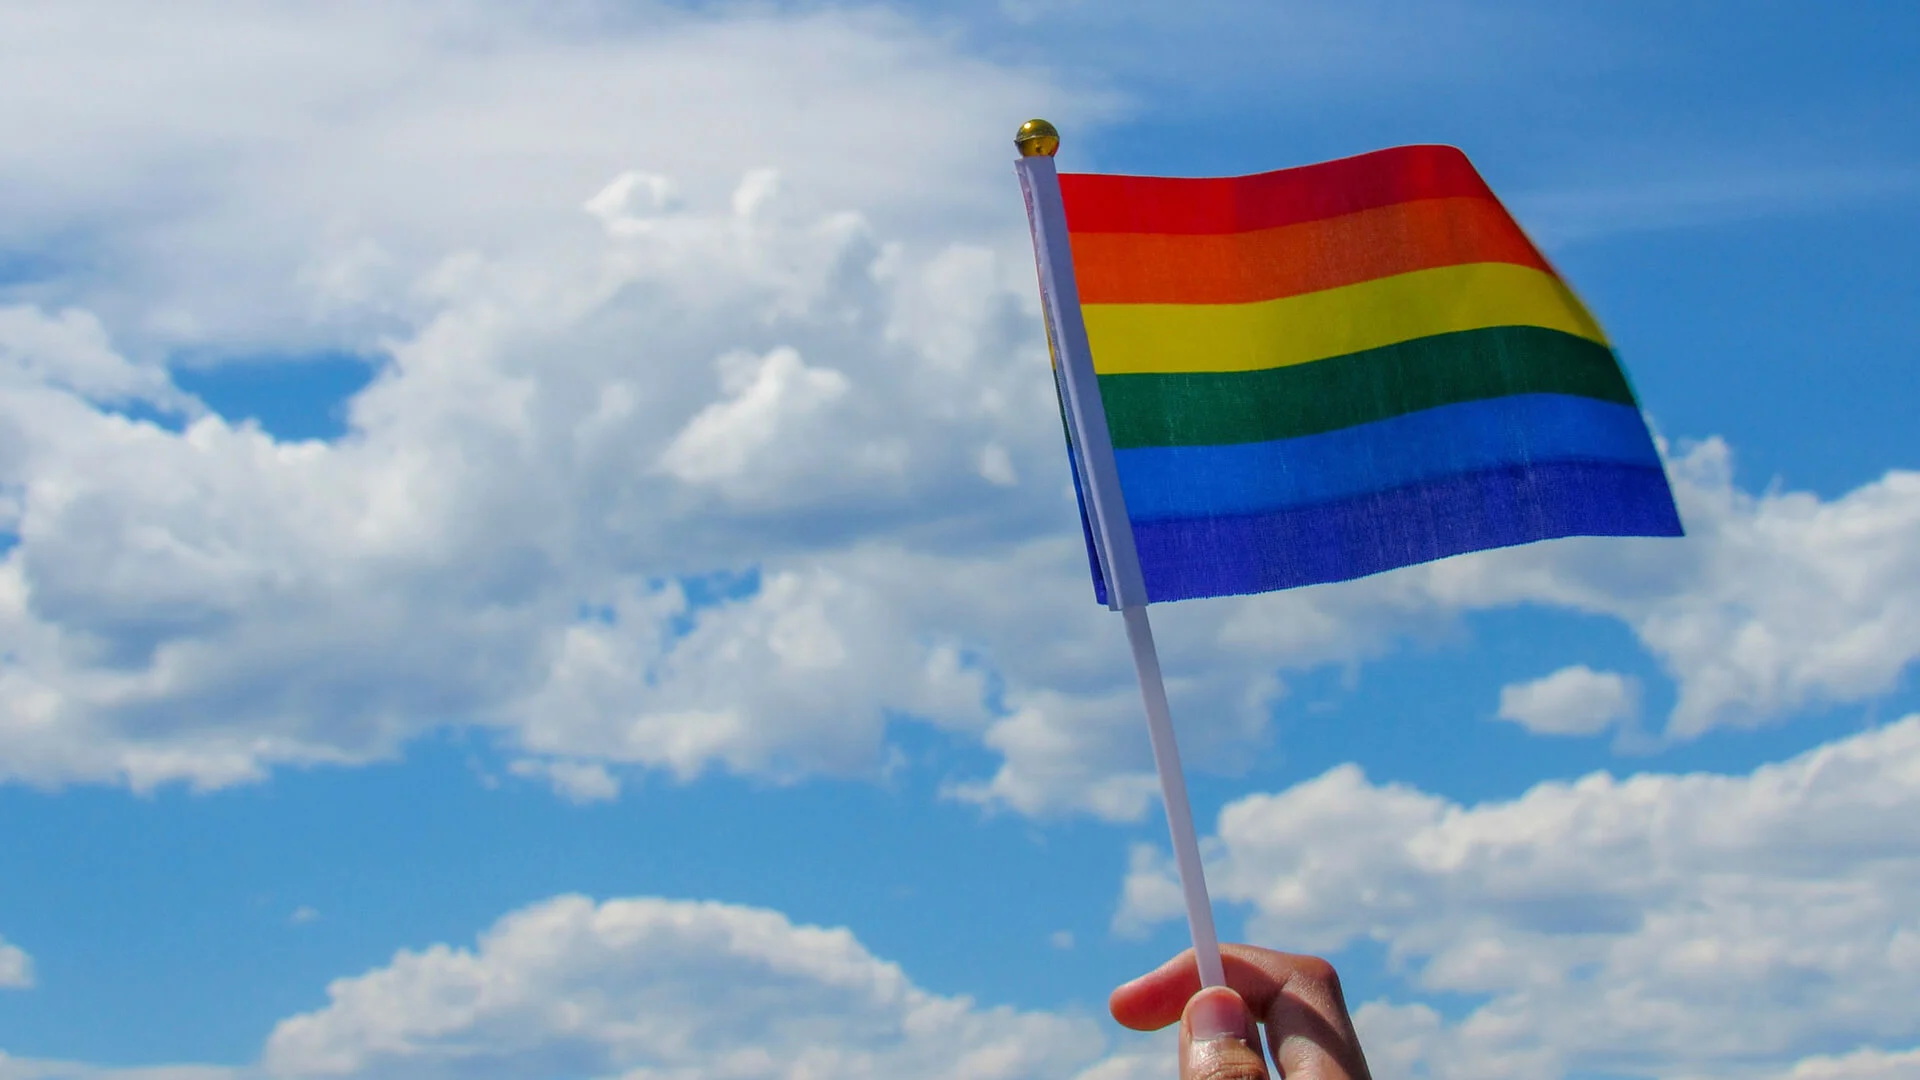 Por que as empresas precisam agir na inclusão LGBTQIA+